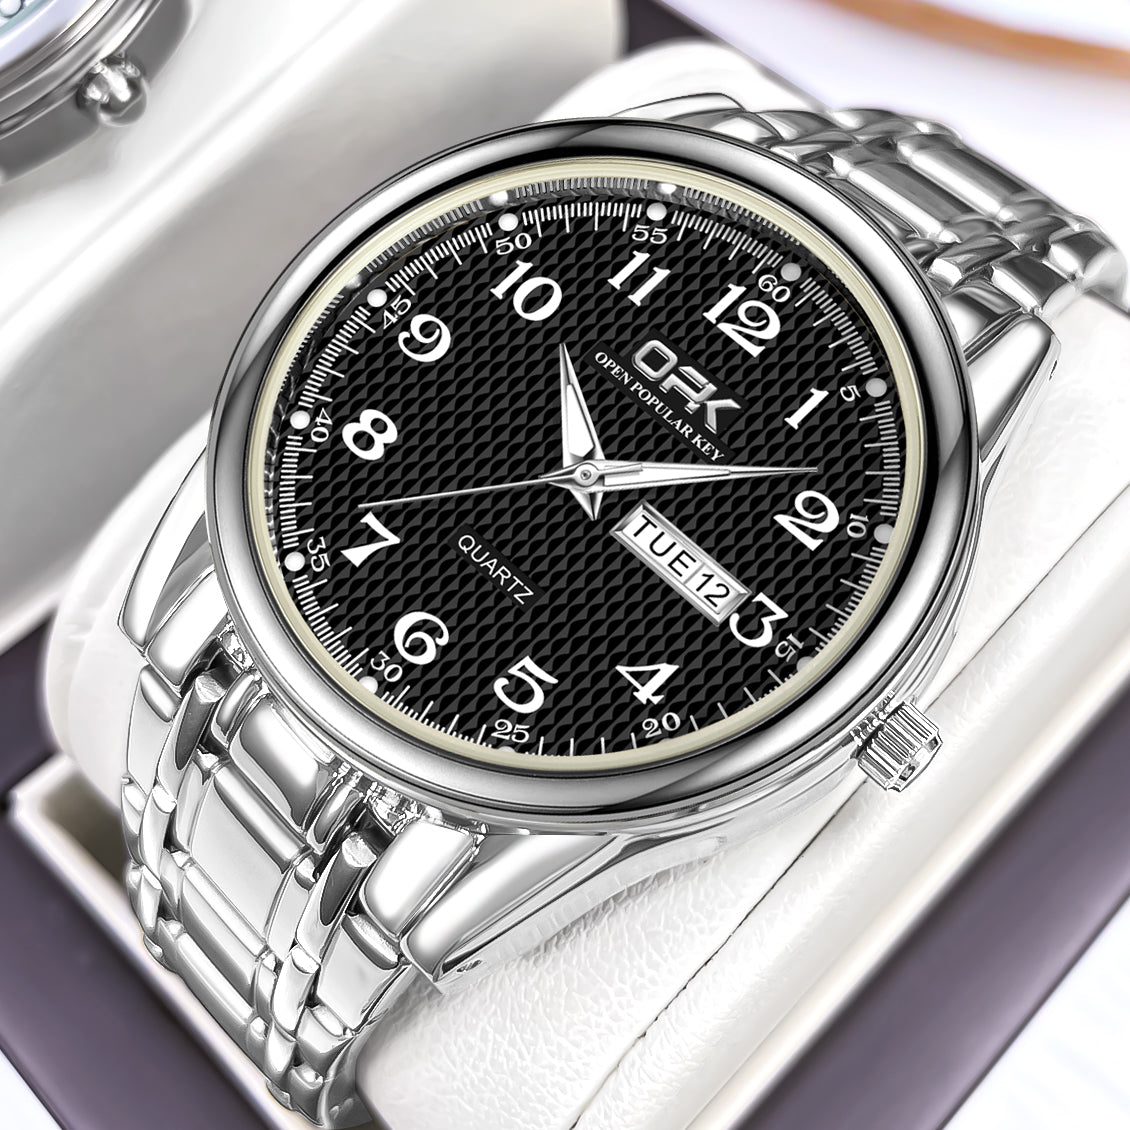 Fashion-forward Quartz Watch Collection W06OPK88110M